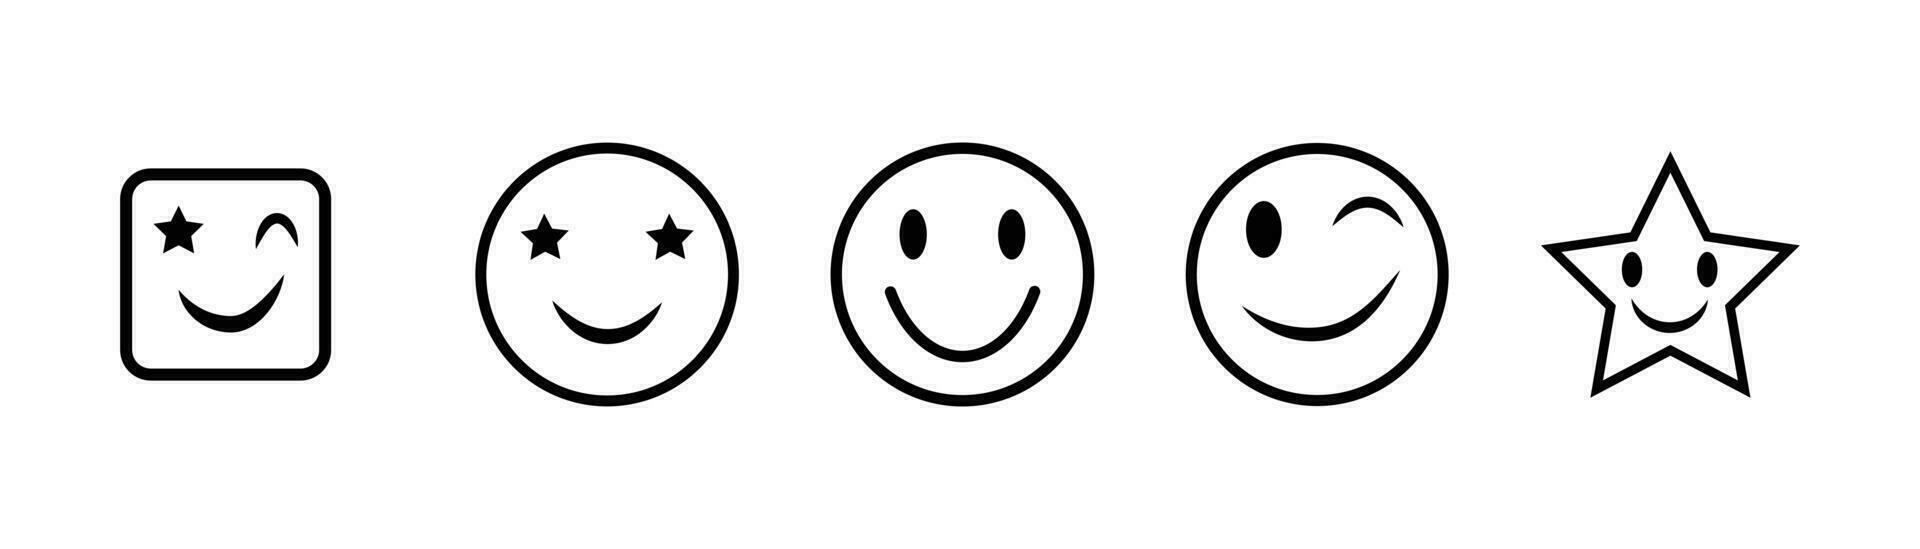 souriant émoticône, content visage Icônes ensemble, sourire icône noir et blanc, emoji visages vecteur illustration